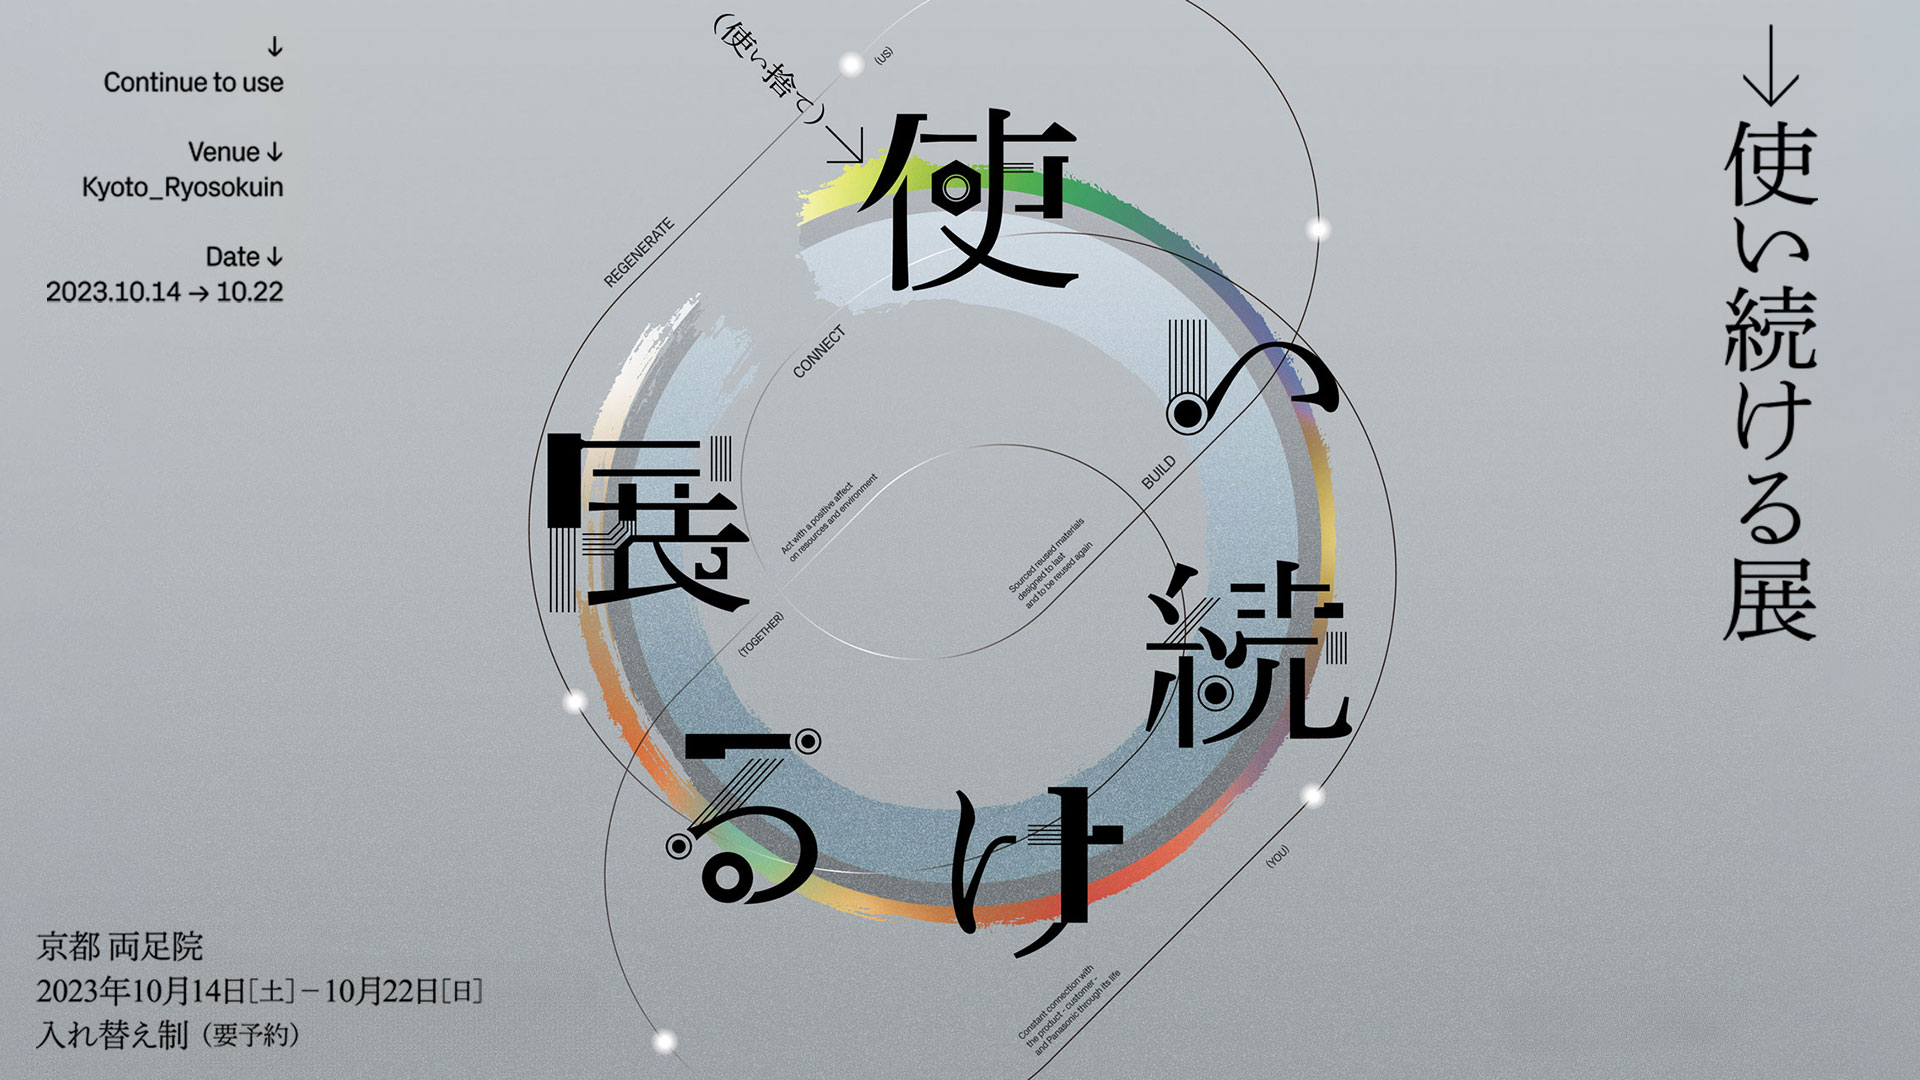 サーキュラーエコノミーを考える「→使い続ける展」を、京都・両足院で10月14-22日に開催 